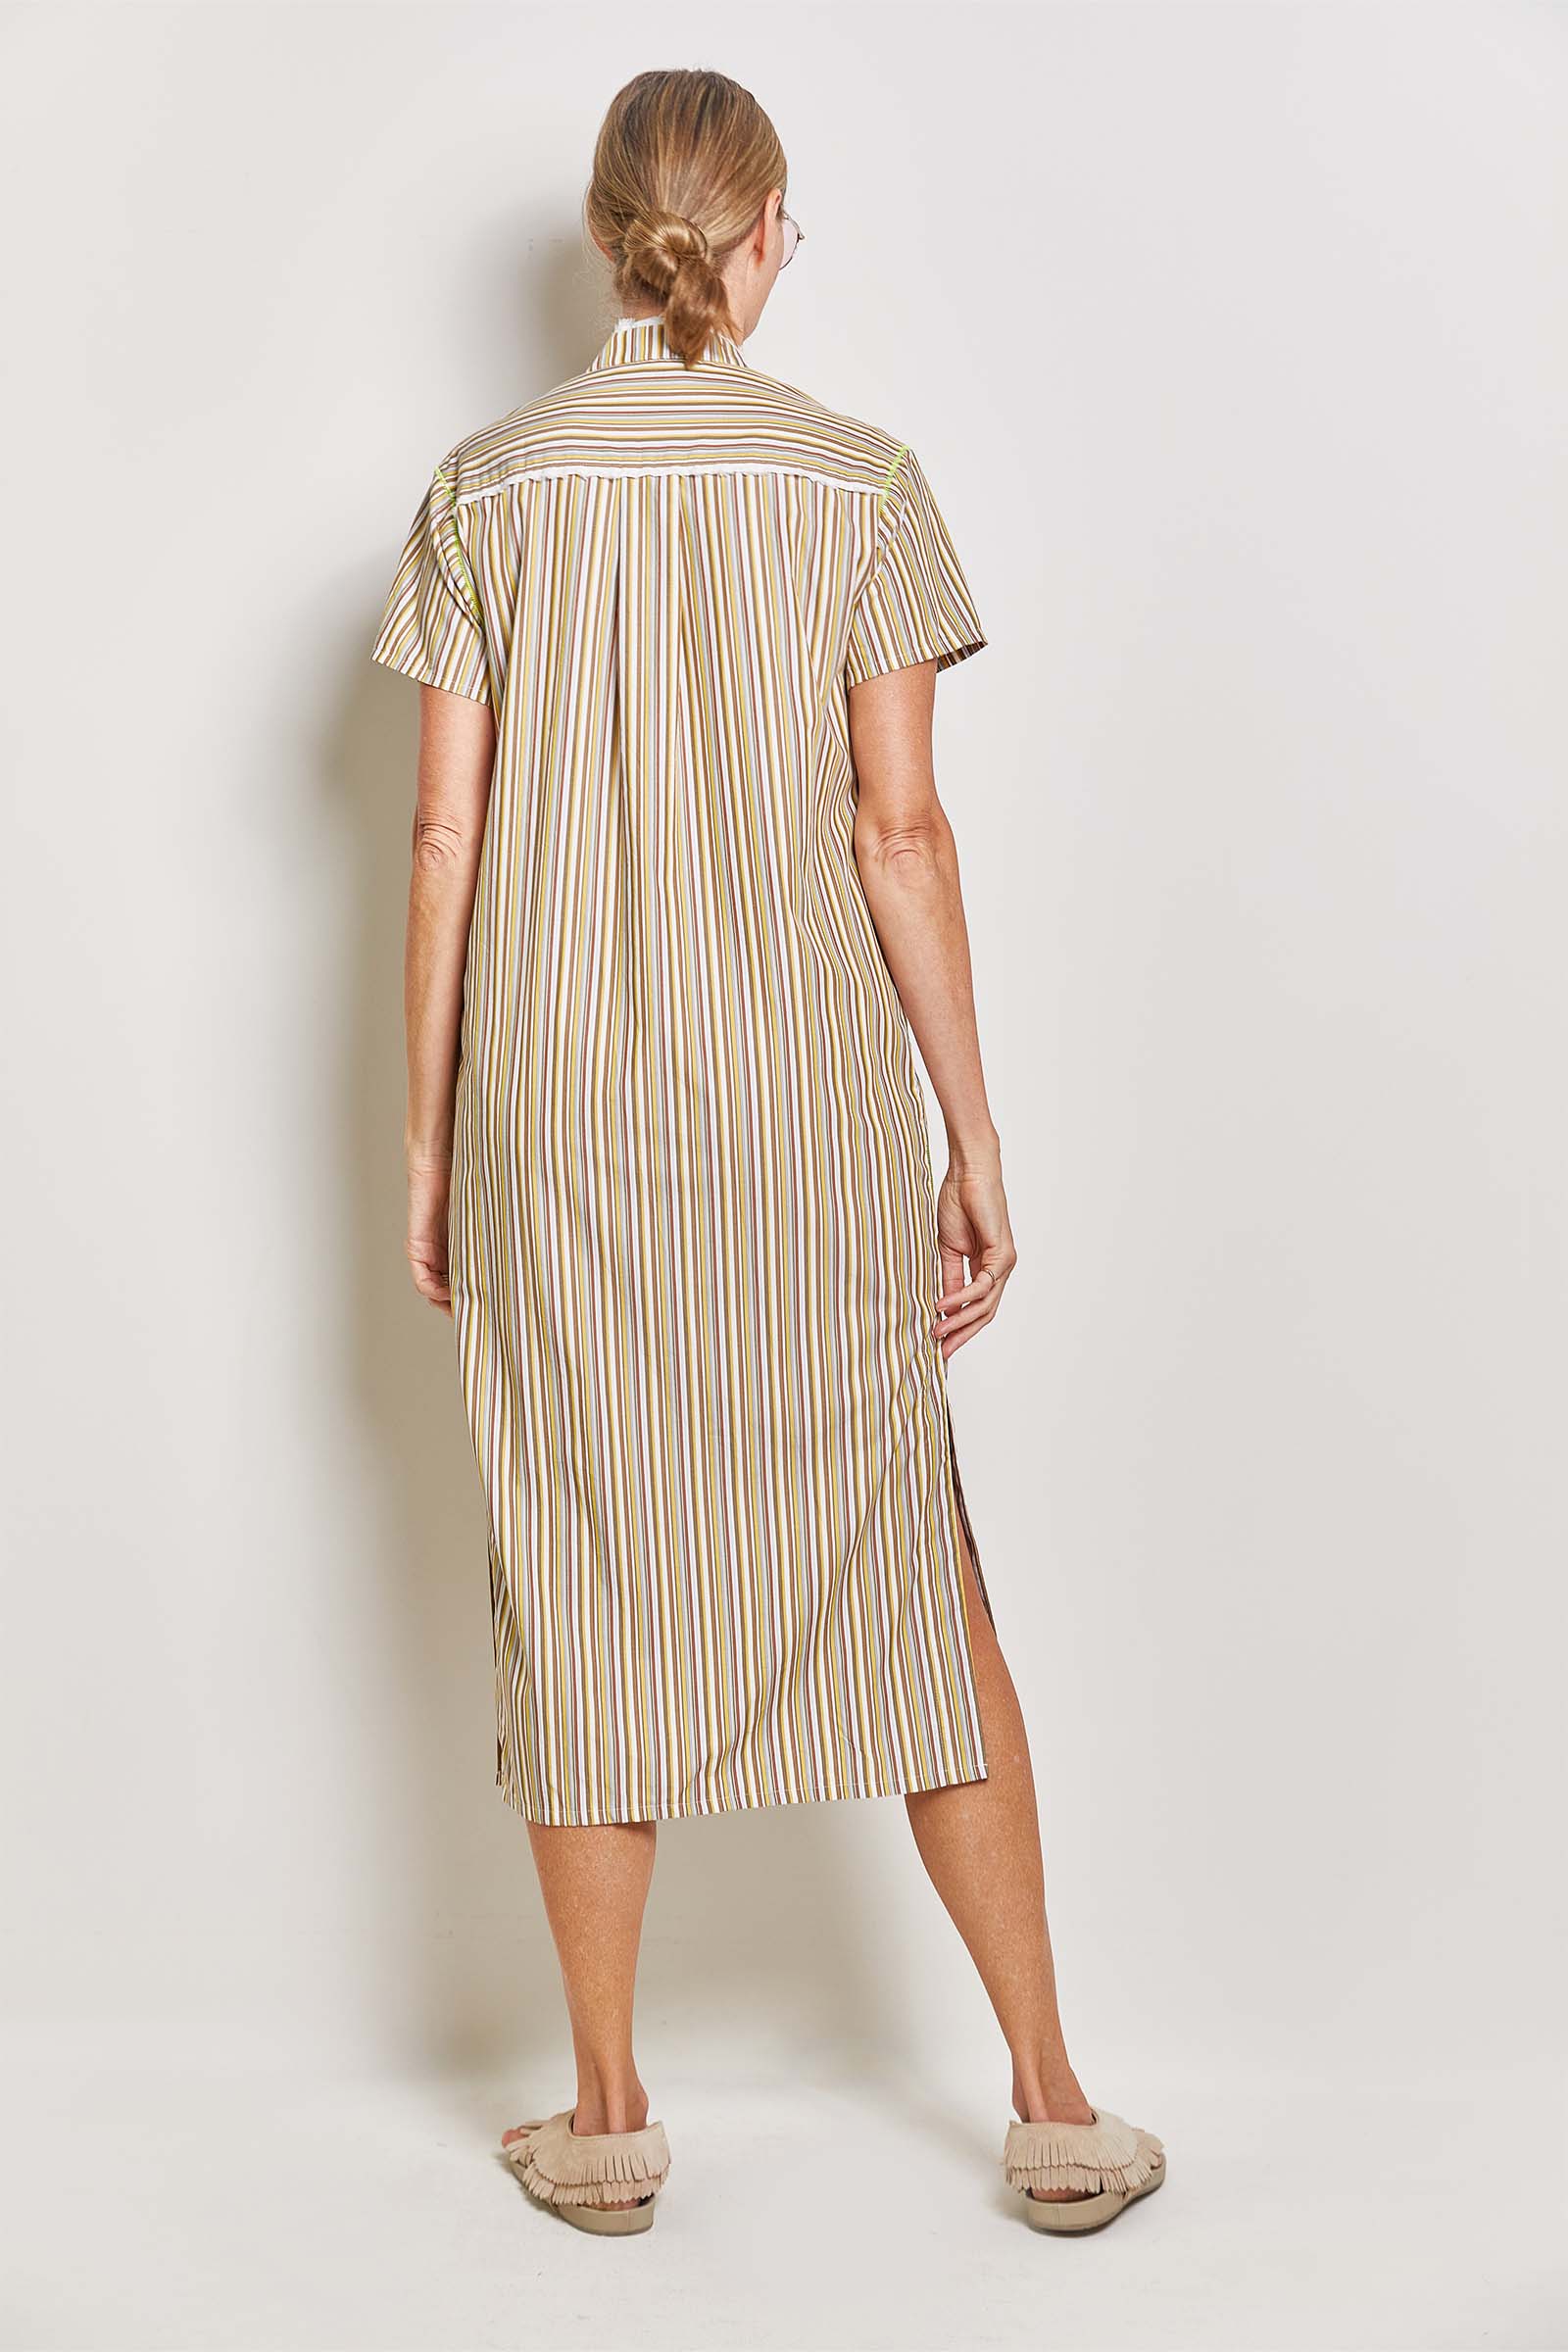 byfreer ginger neutral stripe cotton dress.